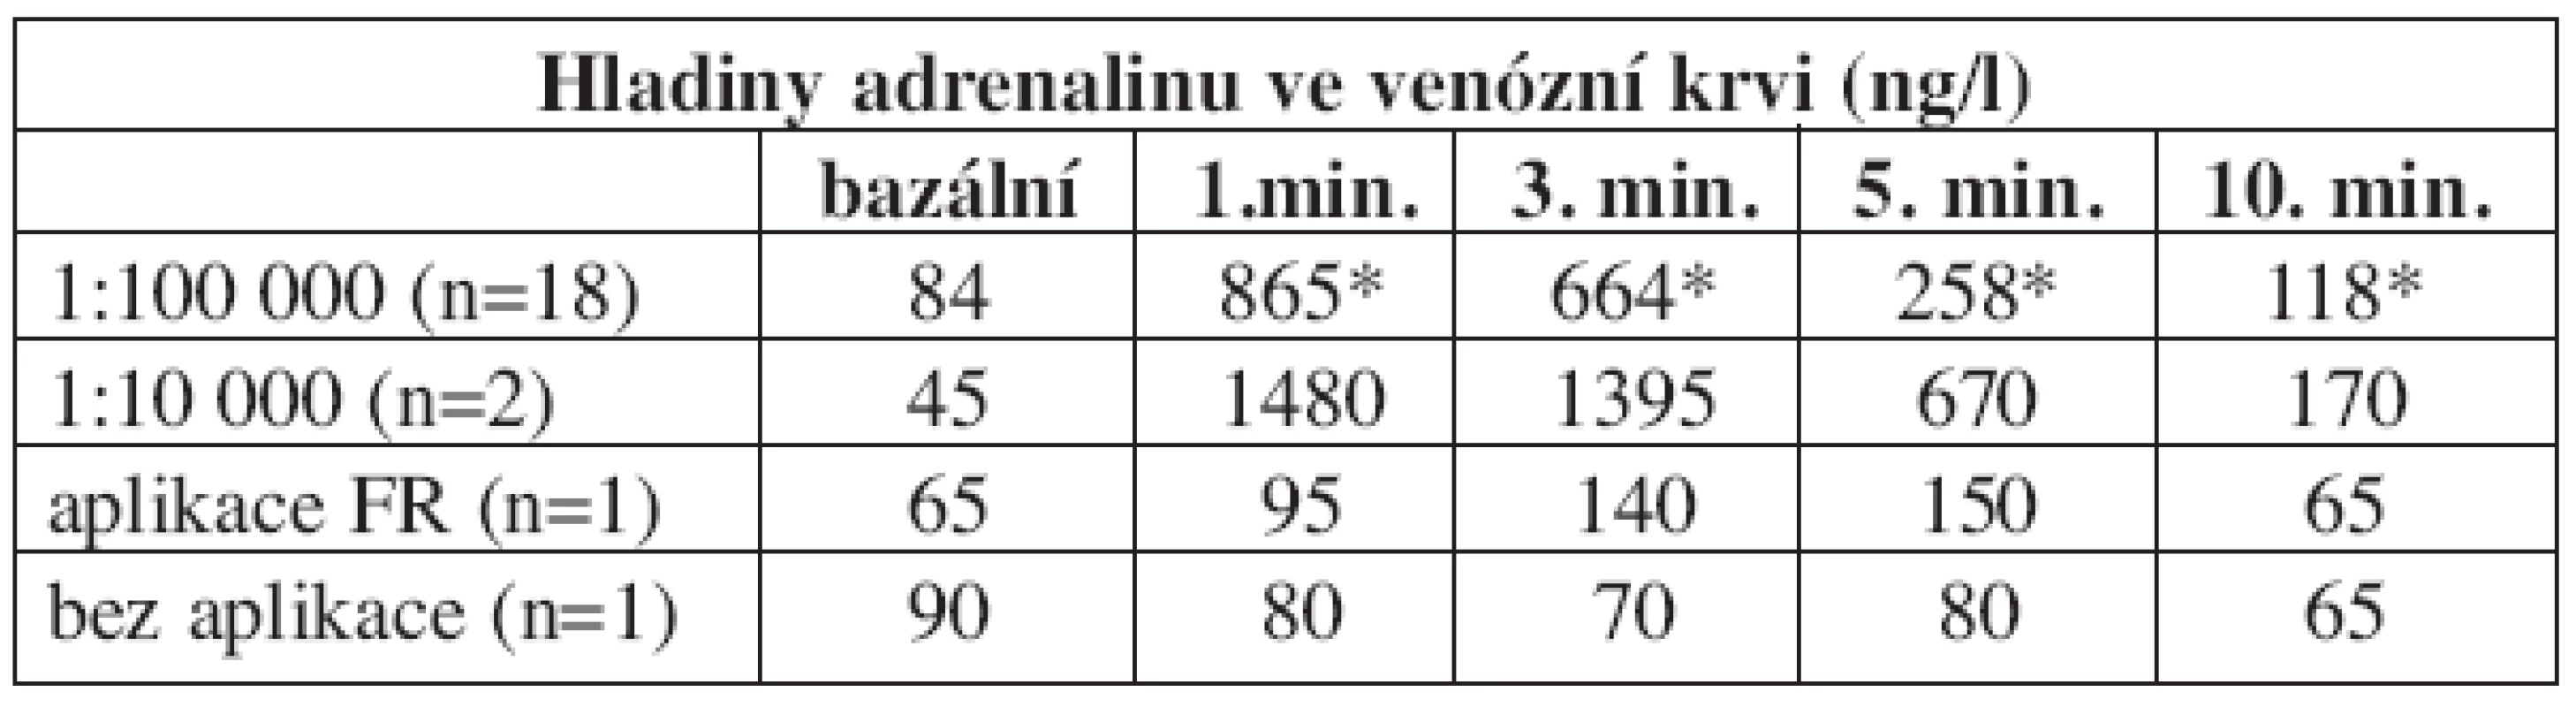 Hladiny adrenalinu ve venózní krvi po injekční aplikaci - rozdělení podle koncentrace, porovnání s kontrolními skupinami